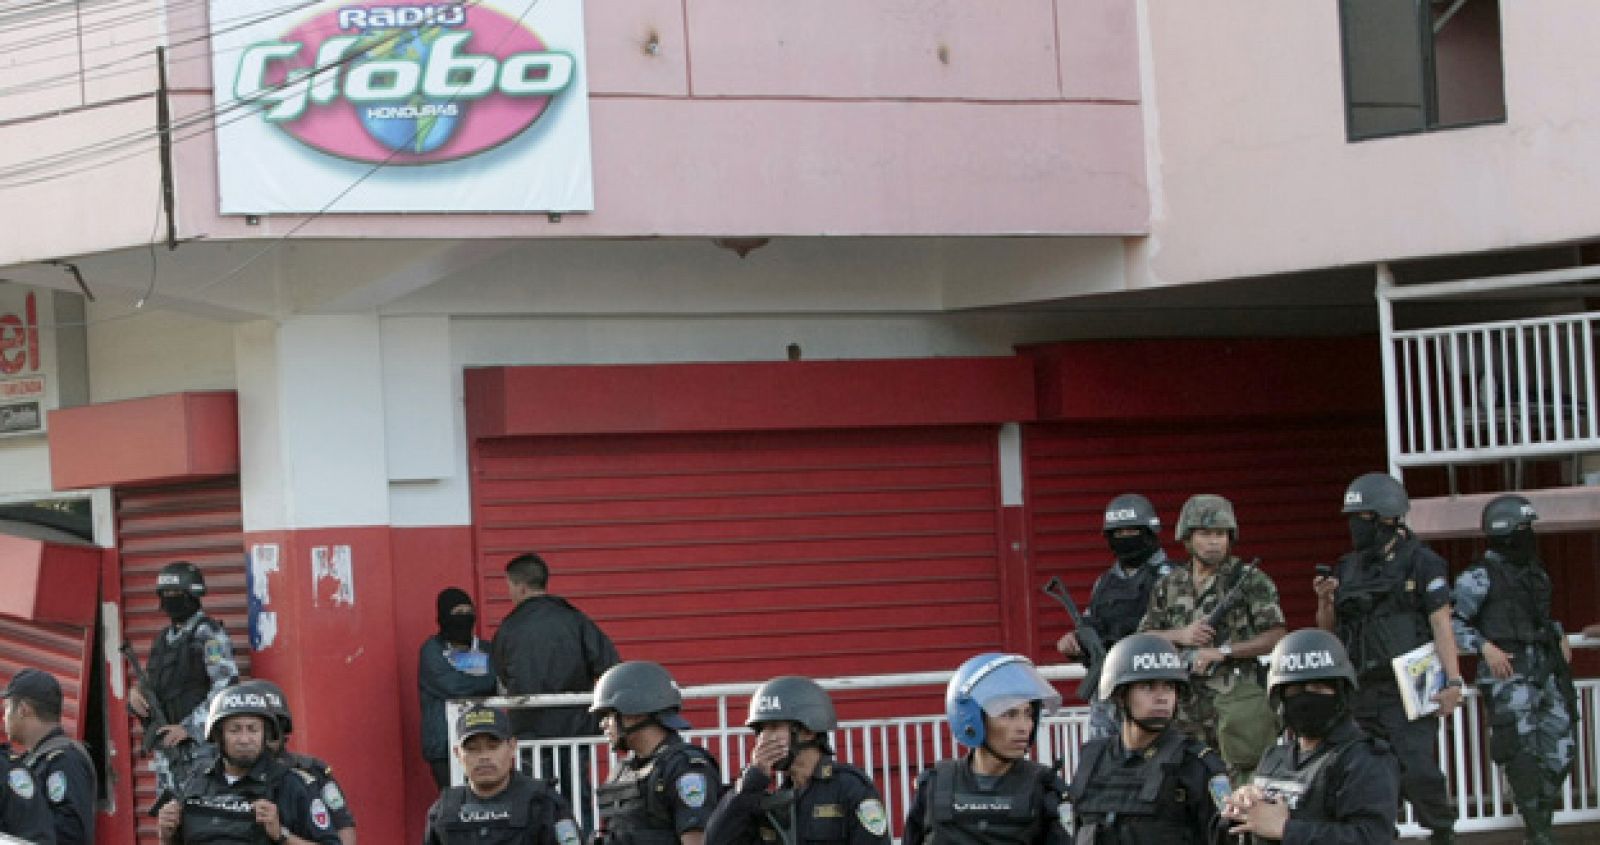 Soldados y polícias montan guardia fuera de la estación de Radio Globo en Tegucigalpa